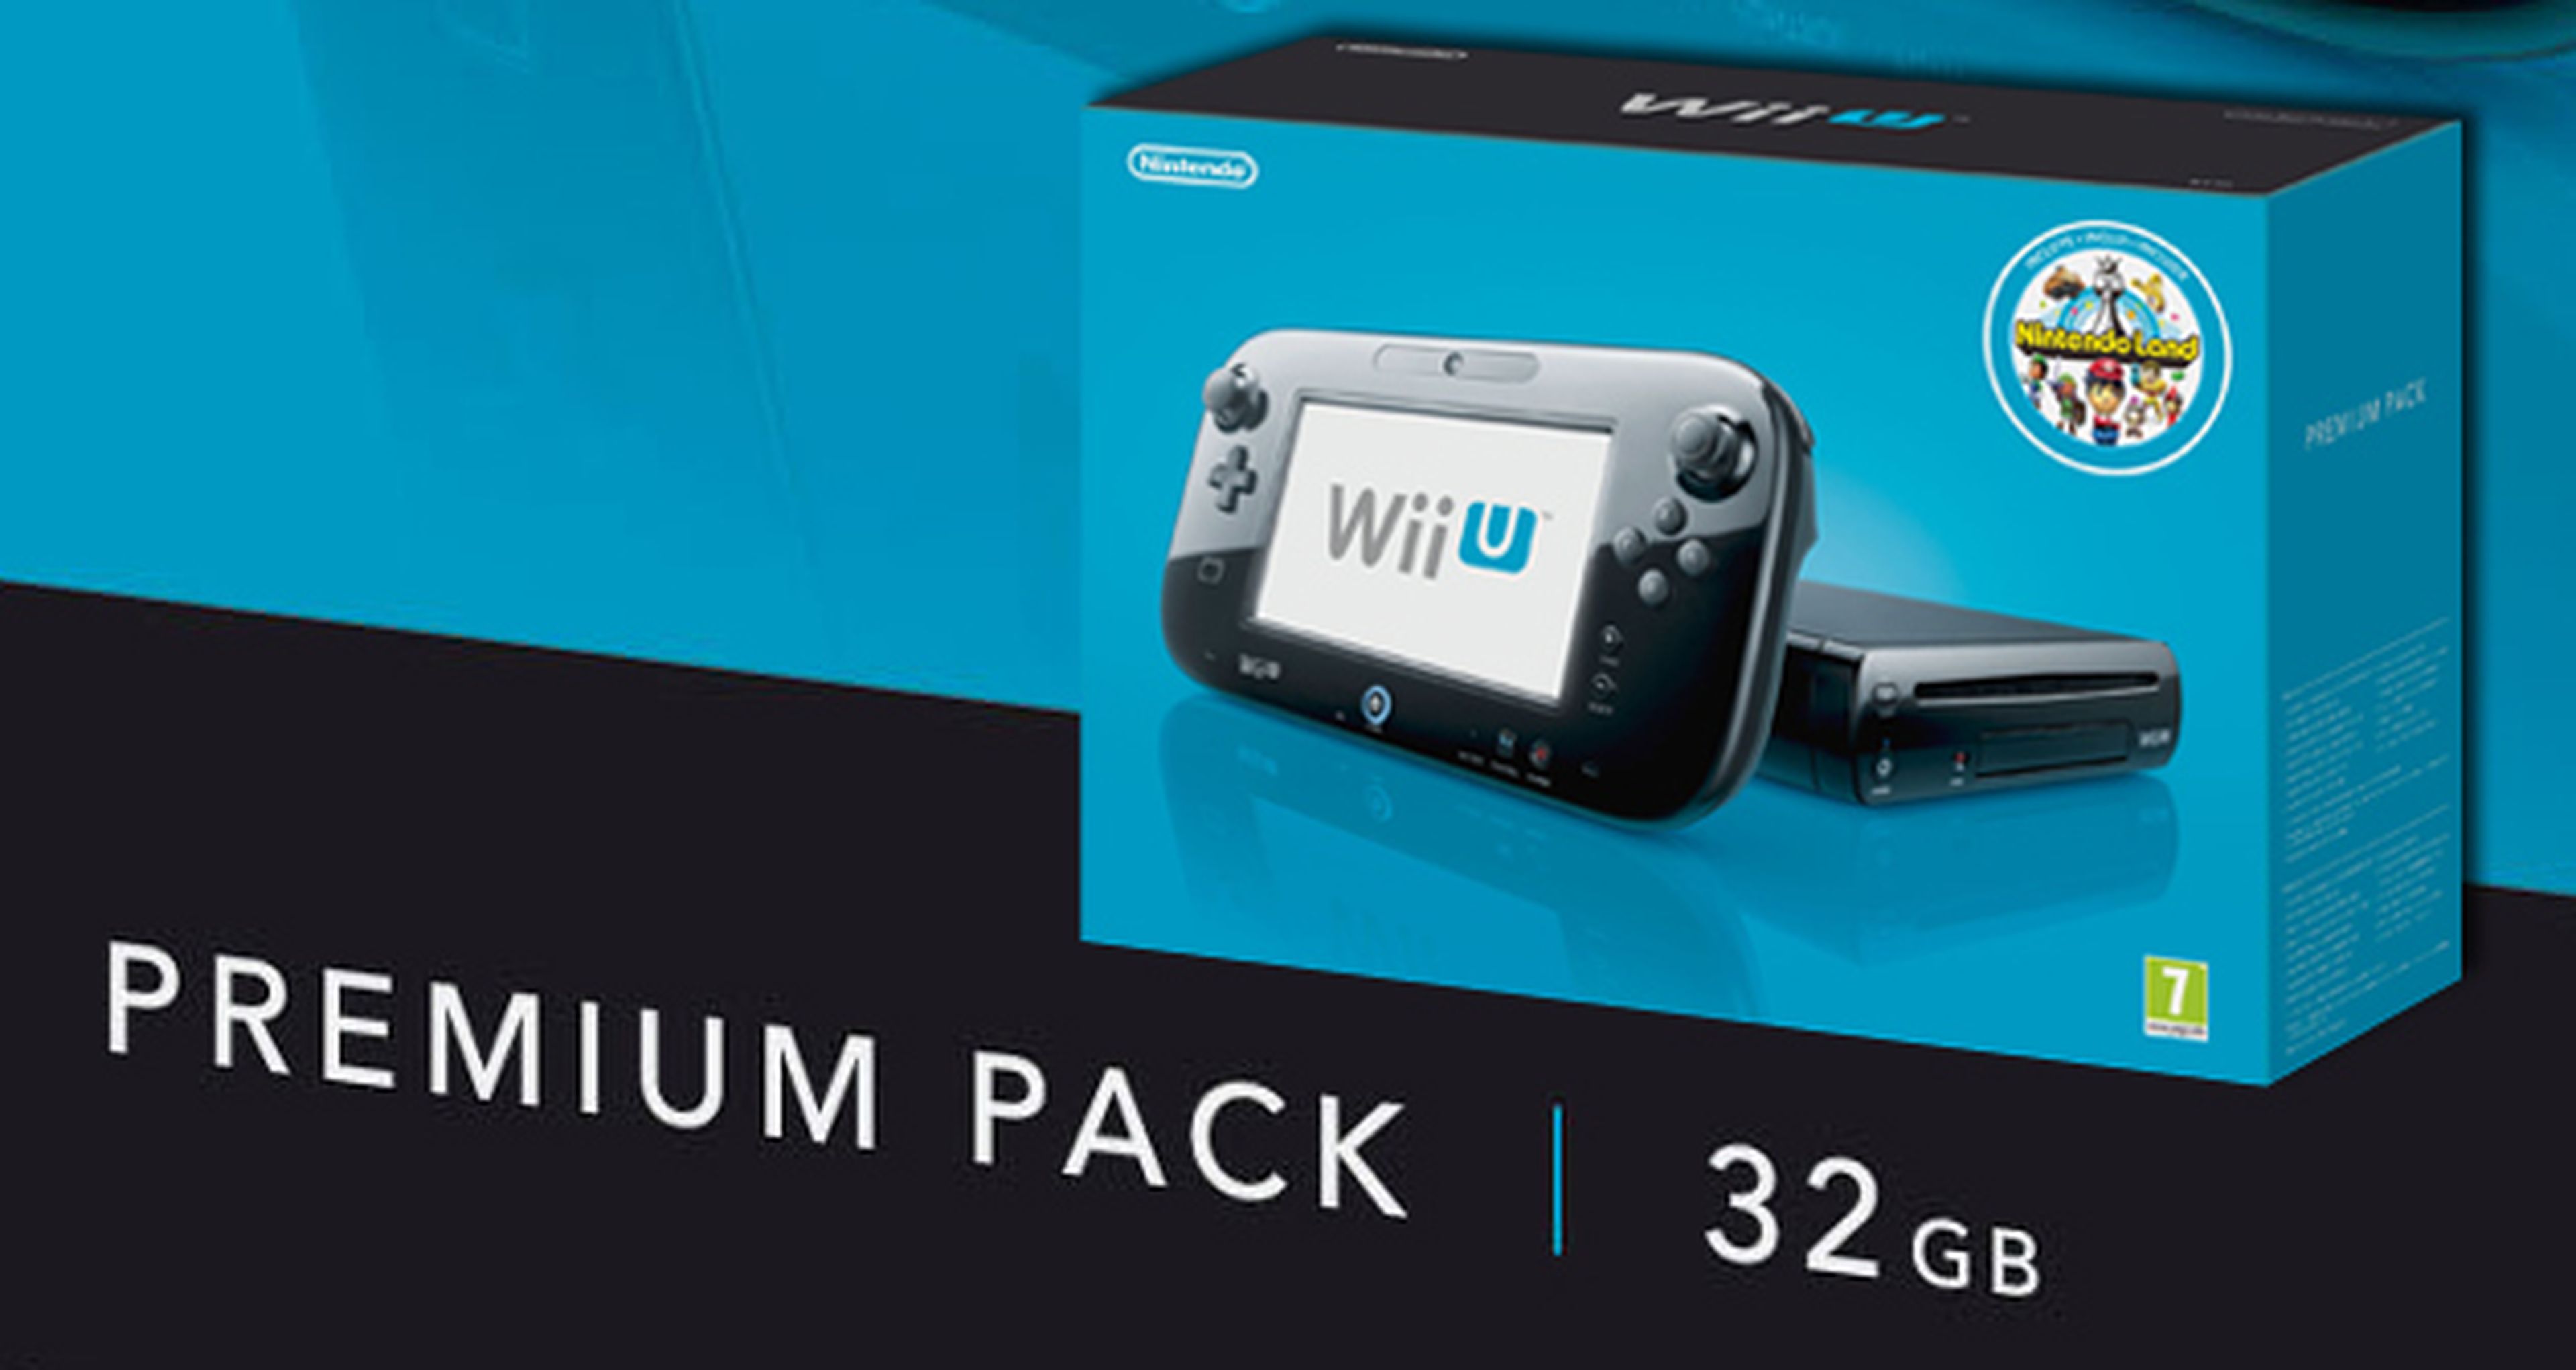 Premium Pack de Wii U, el más vendido